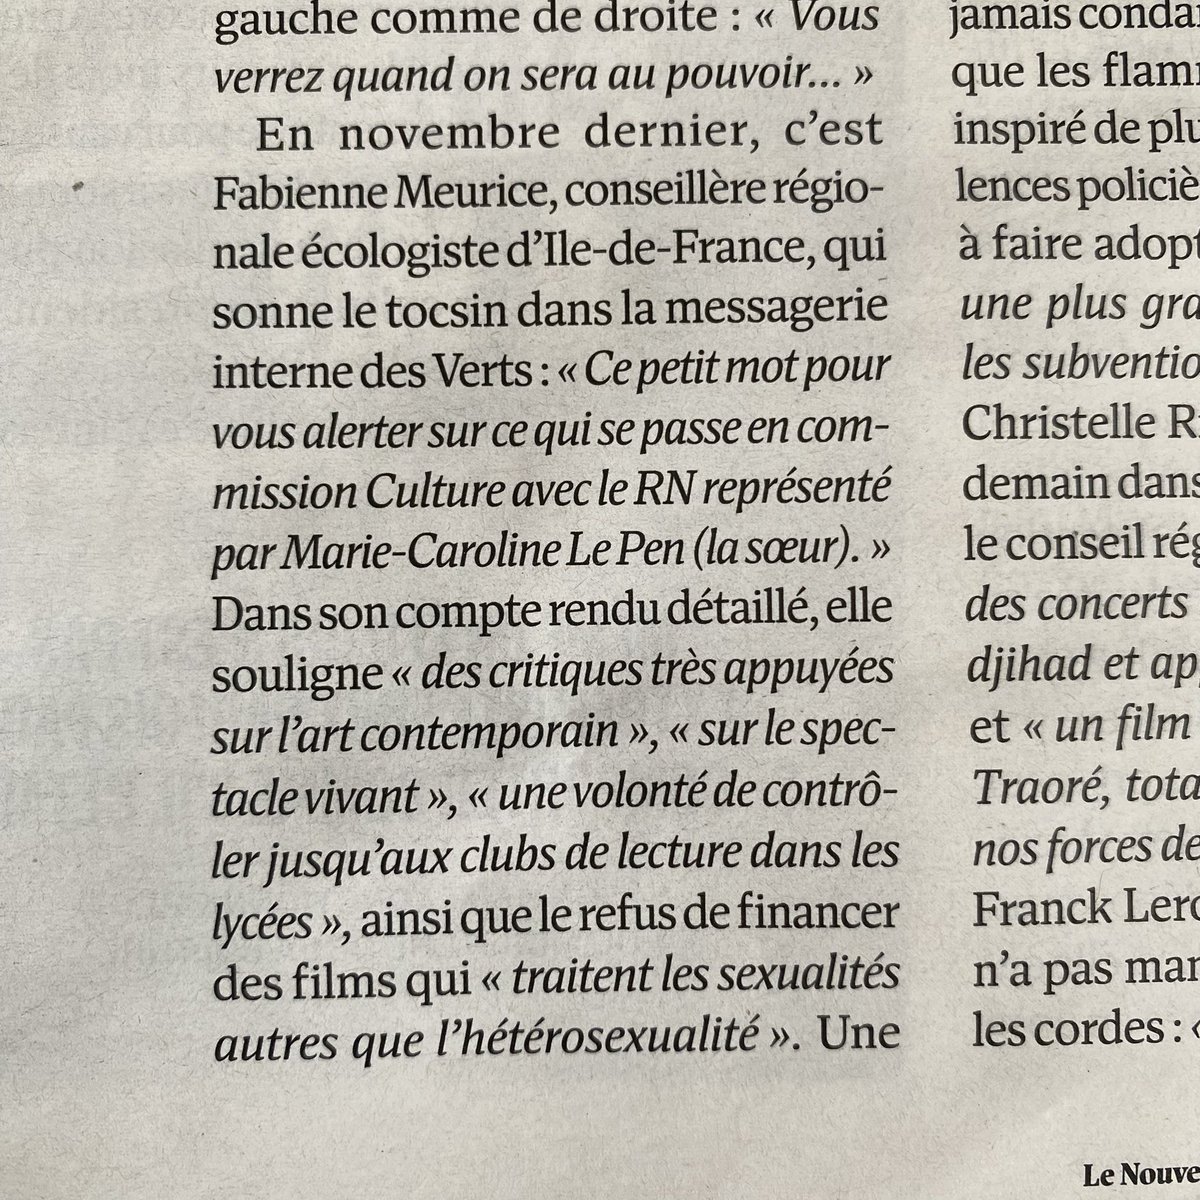 En commission Culture de la région Île-de-France, Marie-Caroline Le Pen fustige l’art contemporain, le spectacle vivant ou le cinéma, avec «'une volonté de contrôler jusqu’aux clubs de lecture dans les lycées' »… L’extrême droite ou la haine de la culture.